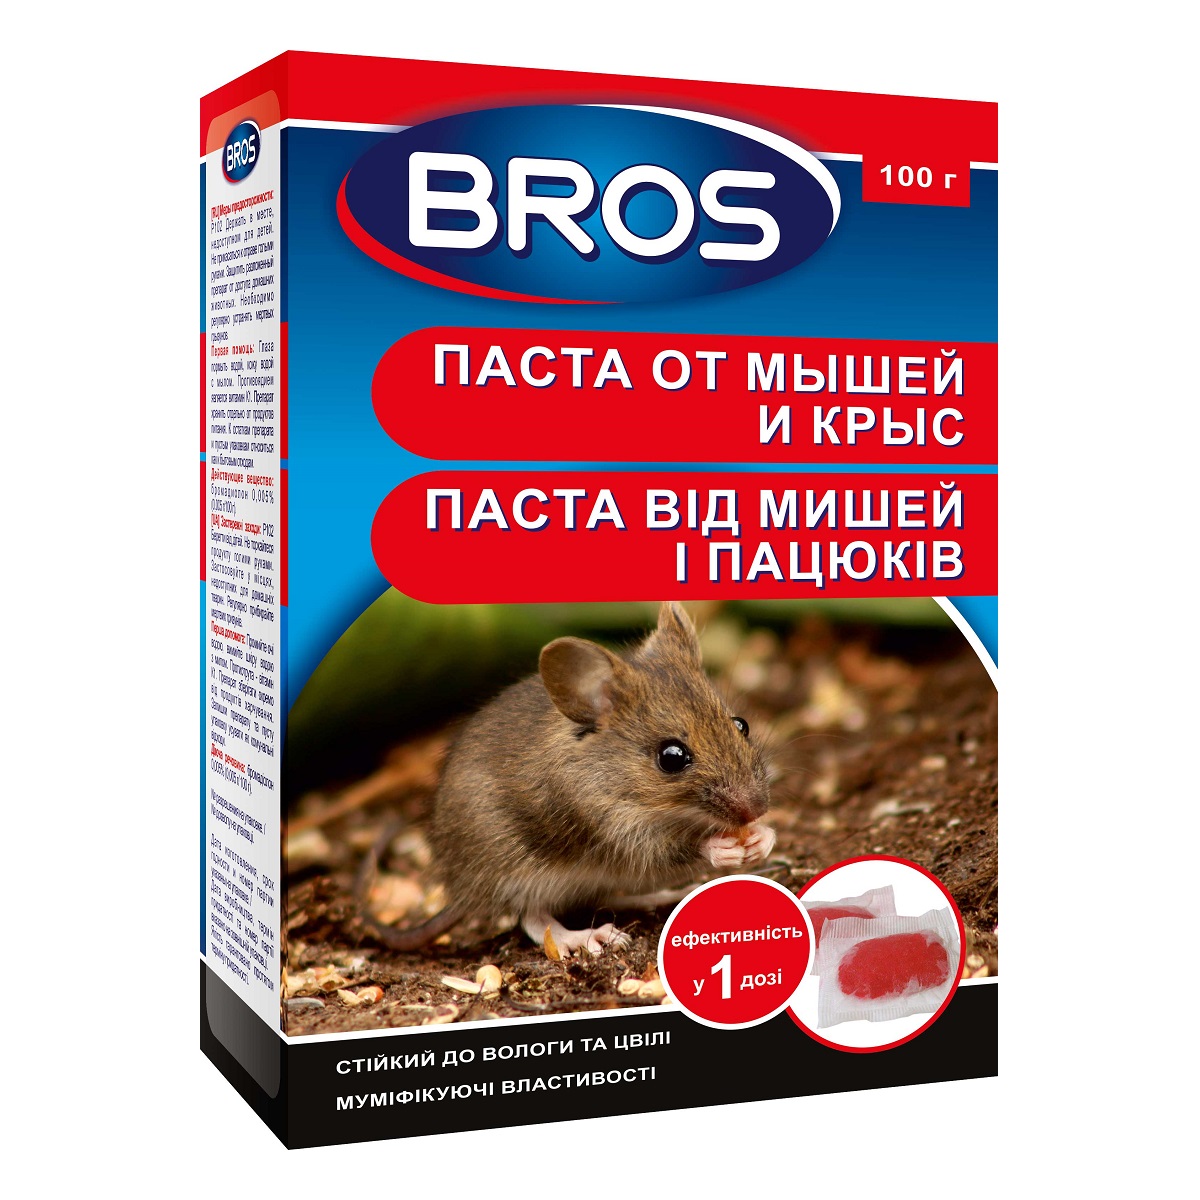 Паста від мишей і пацюків Bros 100 г / Брос